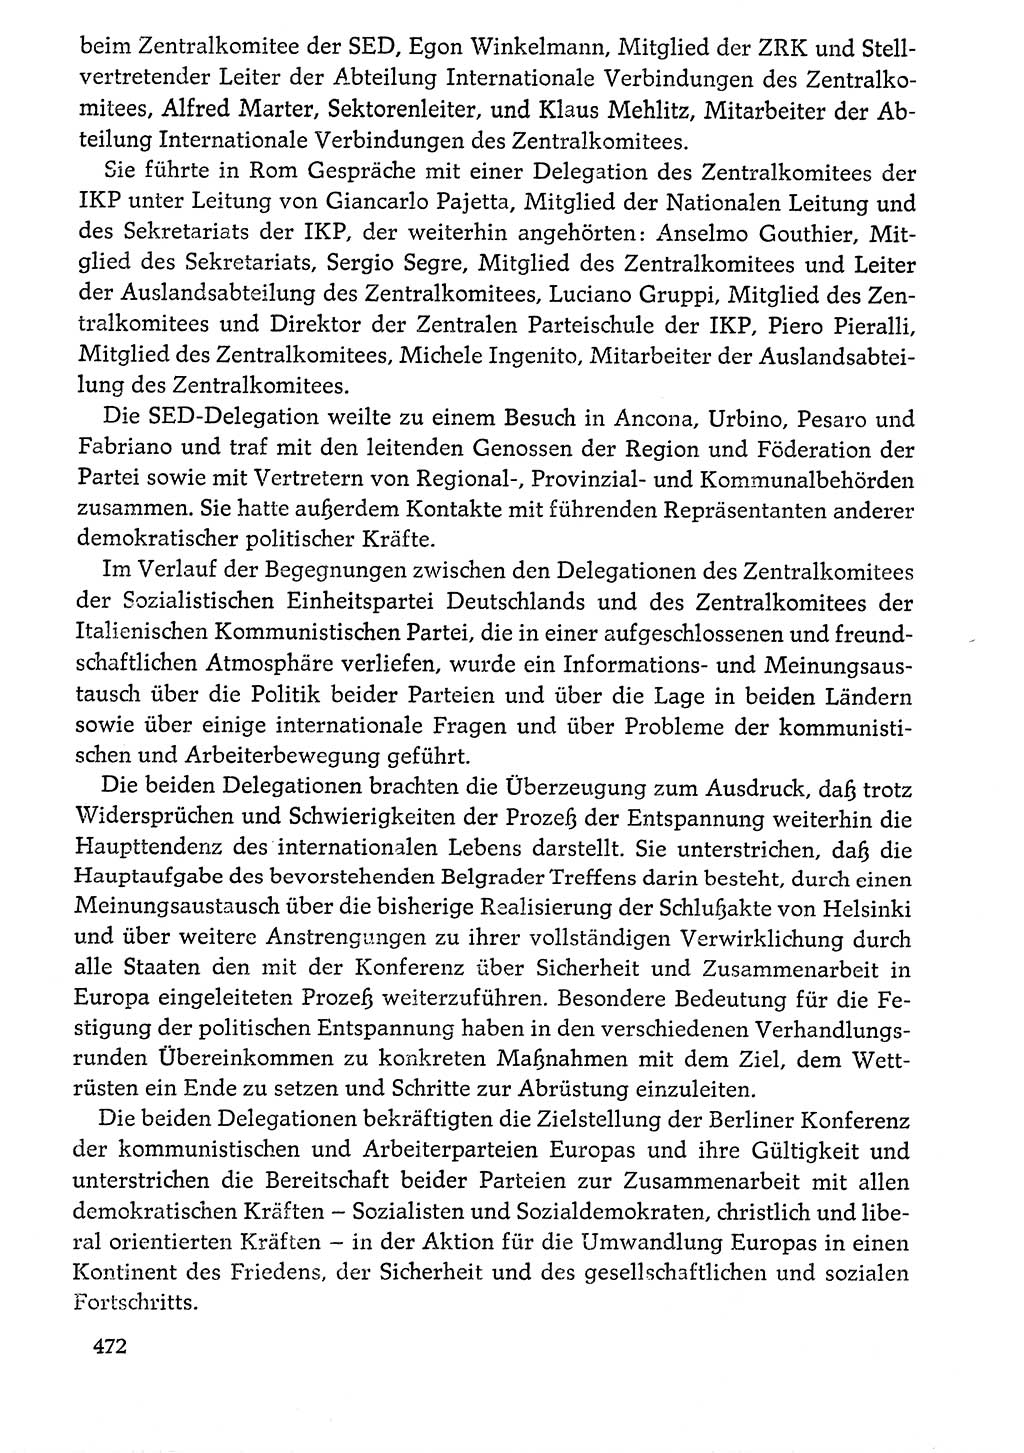 Dokumente der Sozialistischen Einheitspartei Deutschlands (SED) [Deutsche Demokratische Republik (DDR)] 1976-1977, Seite 472 (Dok. SED DDR 1976-1977, S. 472)